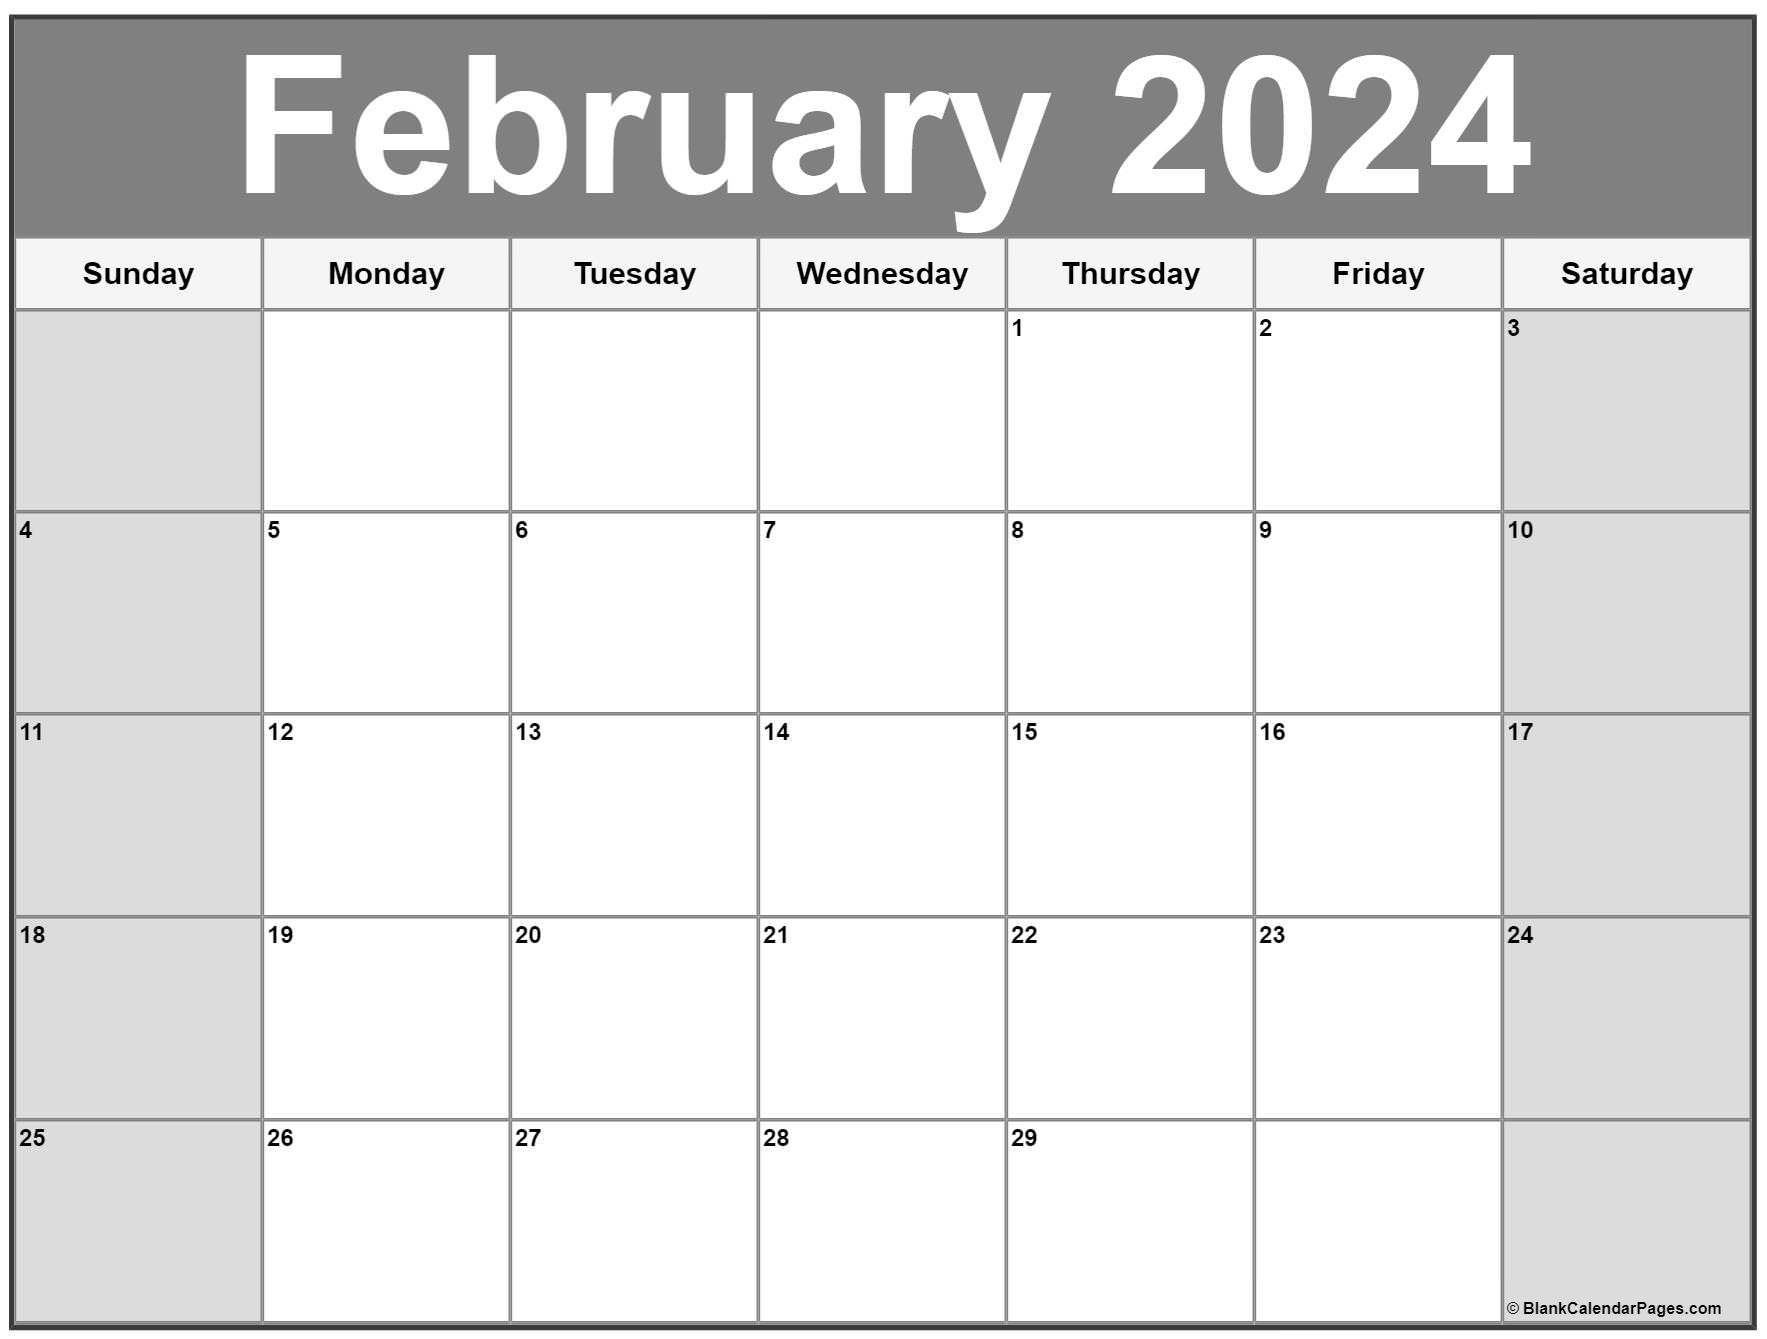 February 2023 calendar | free printable calendar